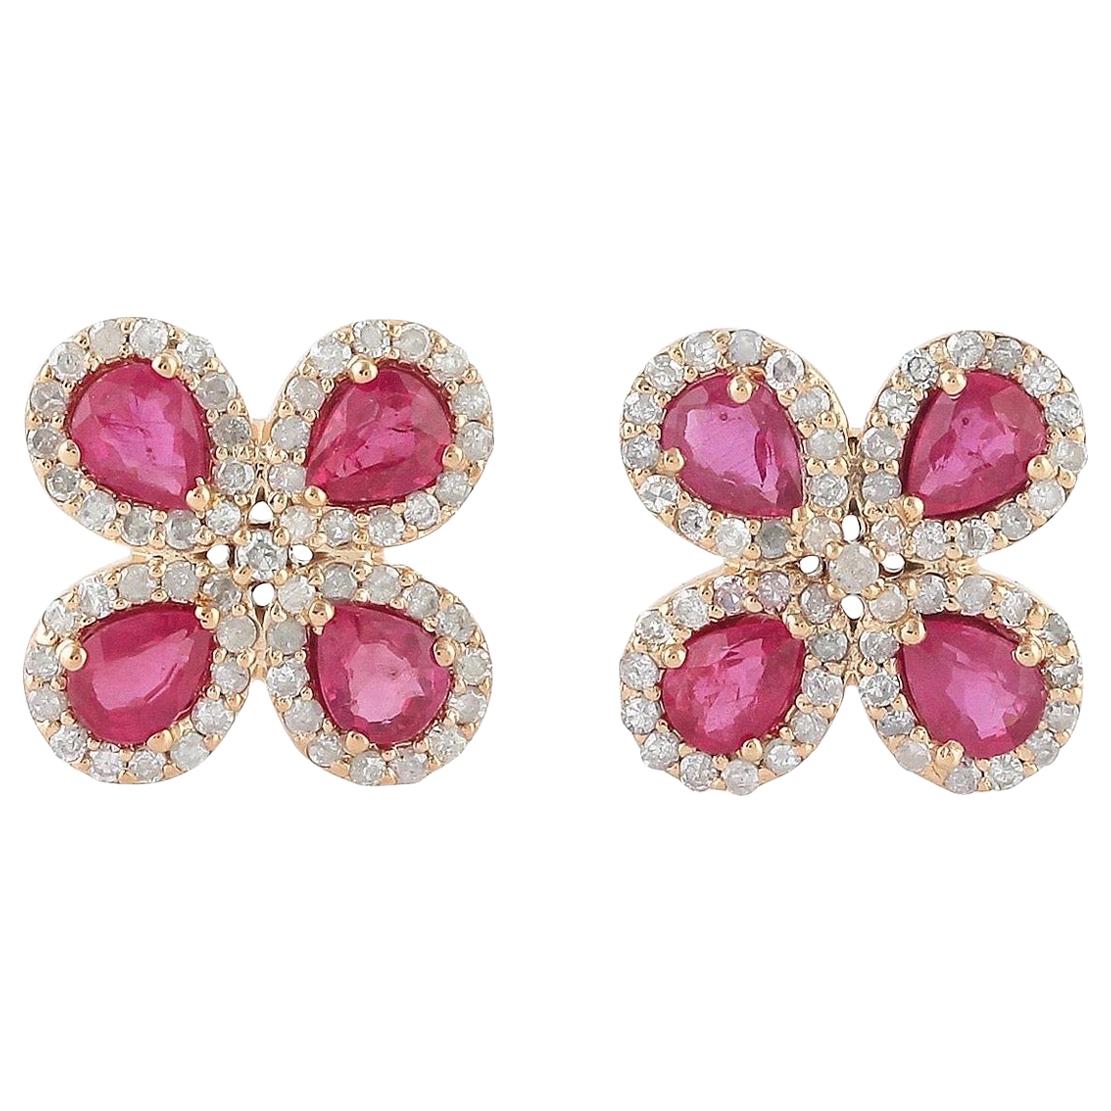 Ruby Diamond 14 Karat Gold Flower Stud Earrings